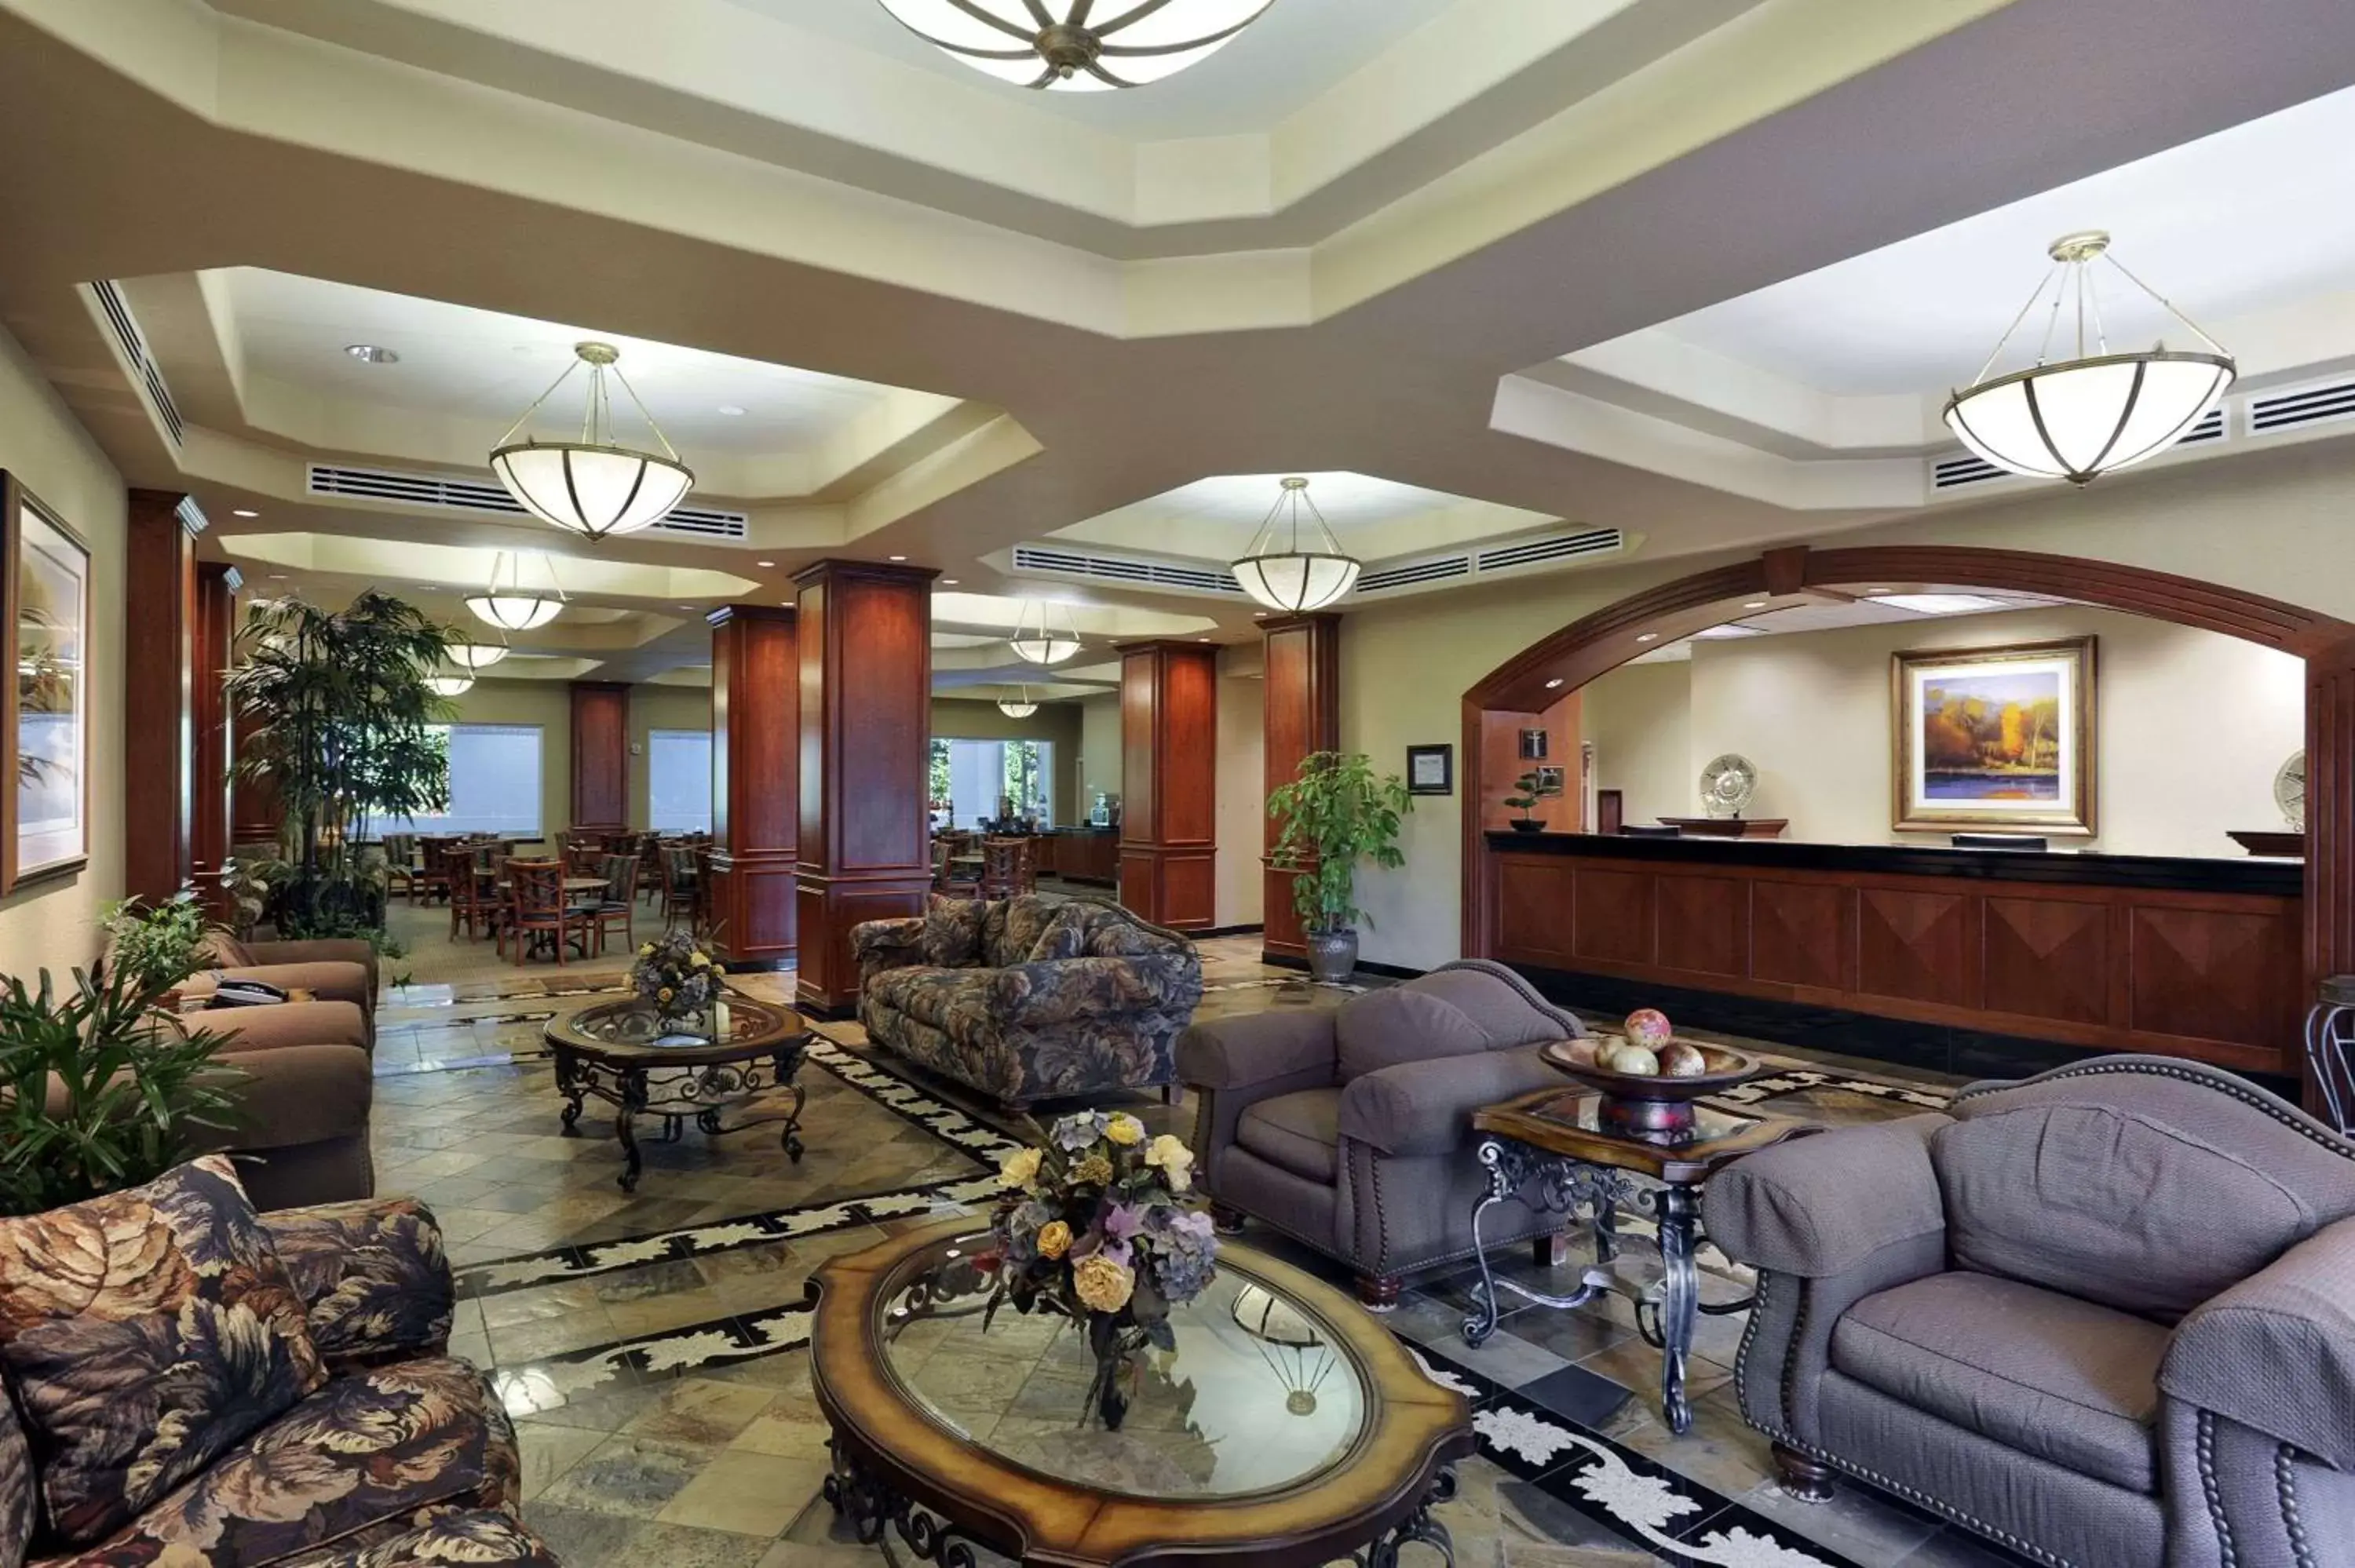 Lobby or reception, Lobby/Reception in Ramada by Wyndham Olympia